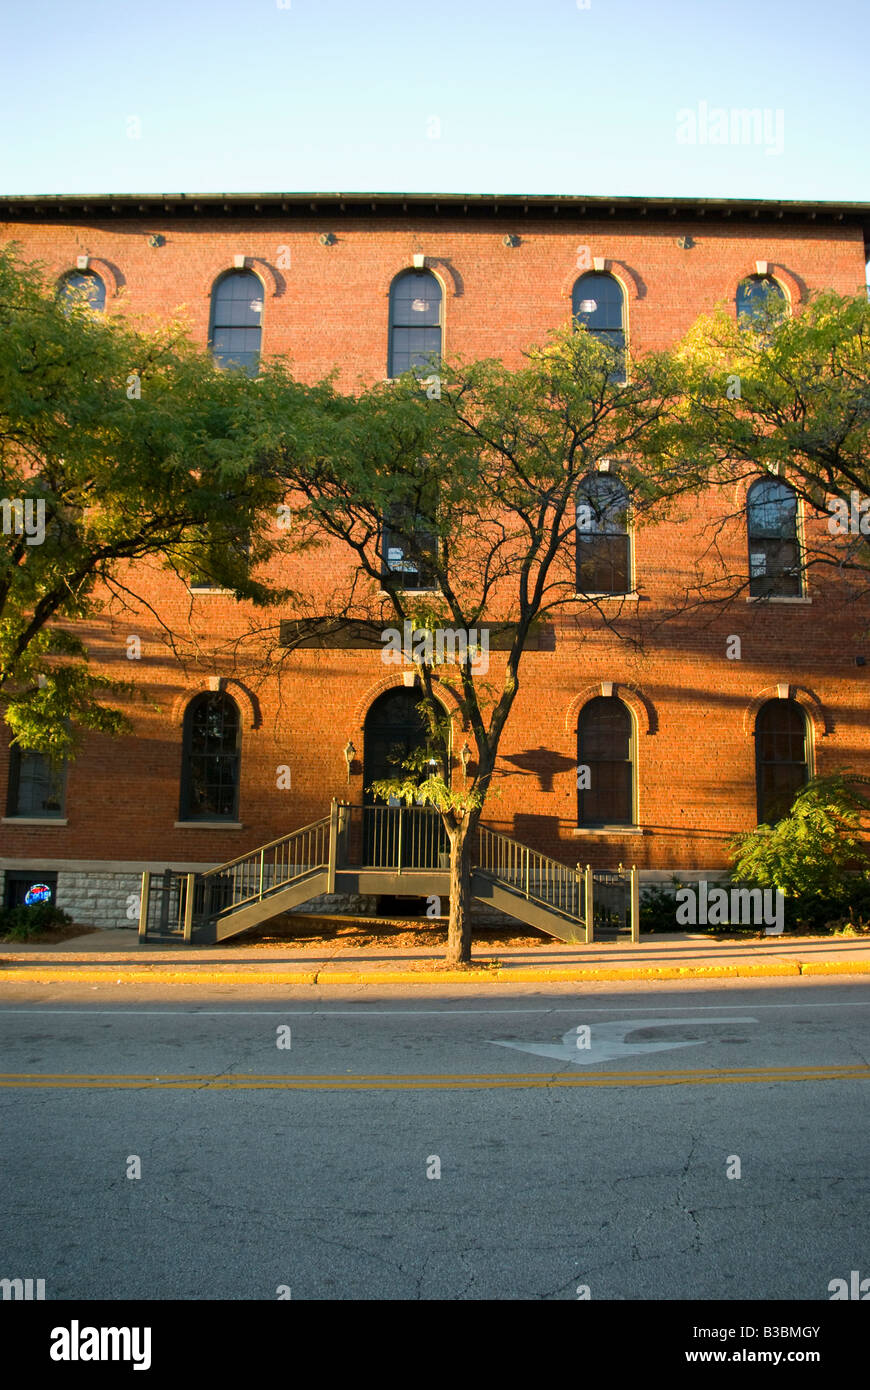 Un bâtiment en briques rouges avec l'arbre de Ginkgo à l'avant est mis en évidence par le soleil l'après-midi au plus tard Banque D'Images